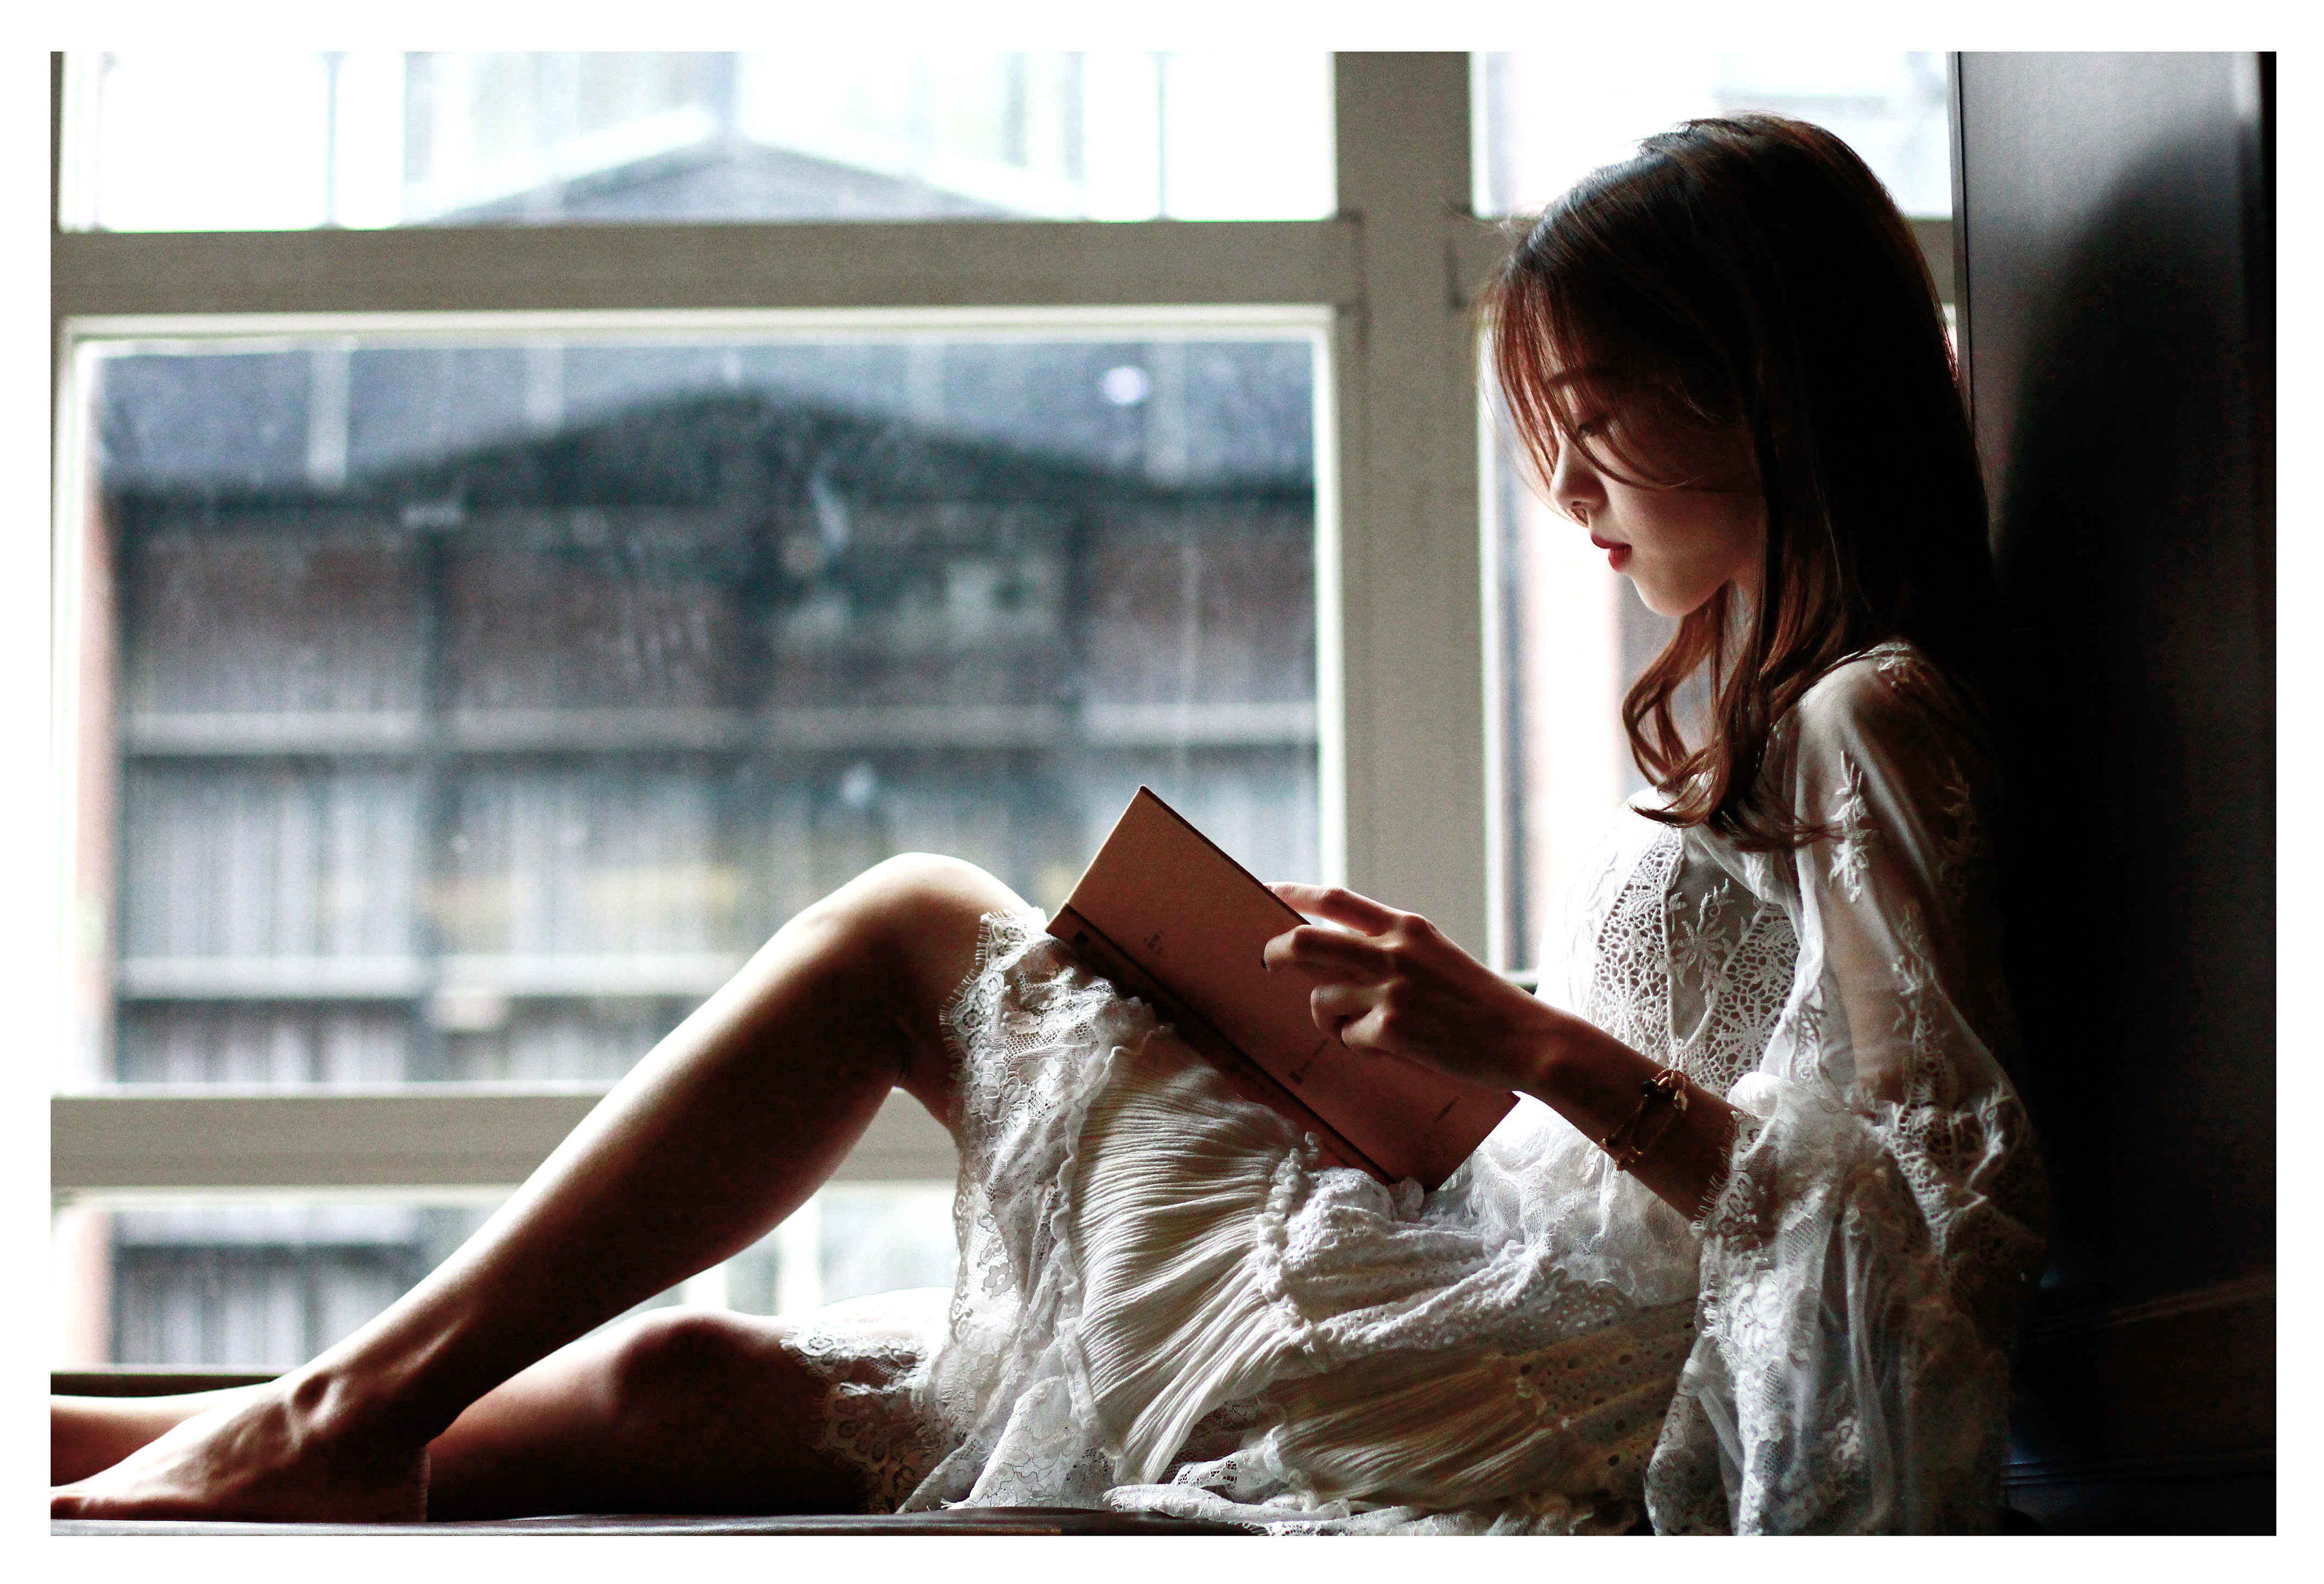 4   6 这个坐在窗台上看书,整体感觉不错.姑娘的表情恬静自.